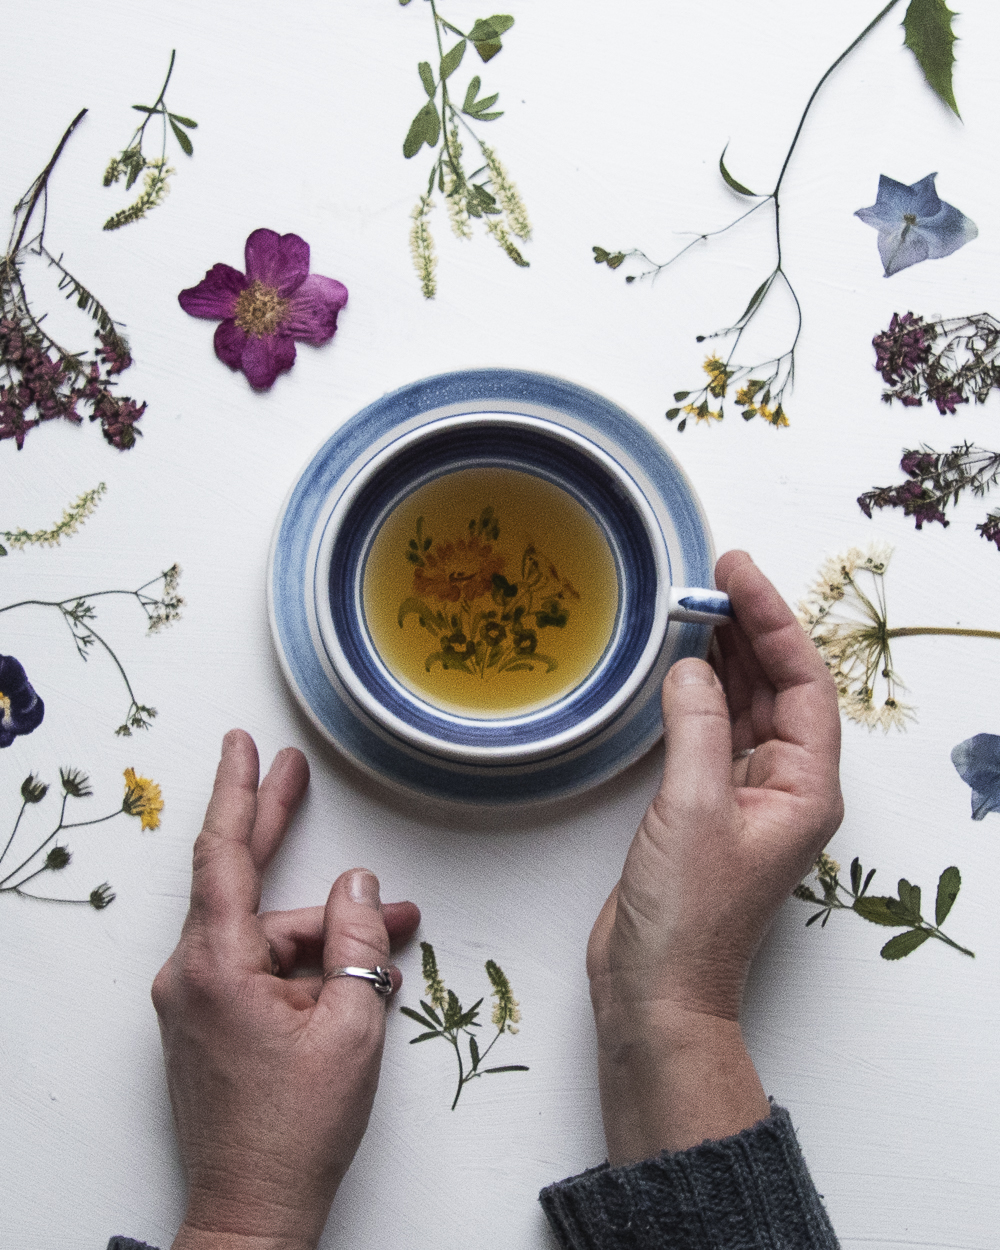 Te og blomster - Lise Kryger